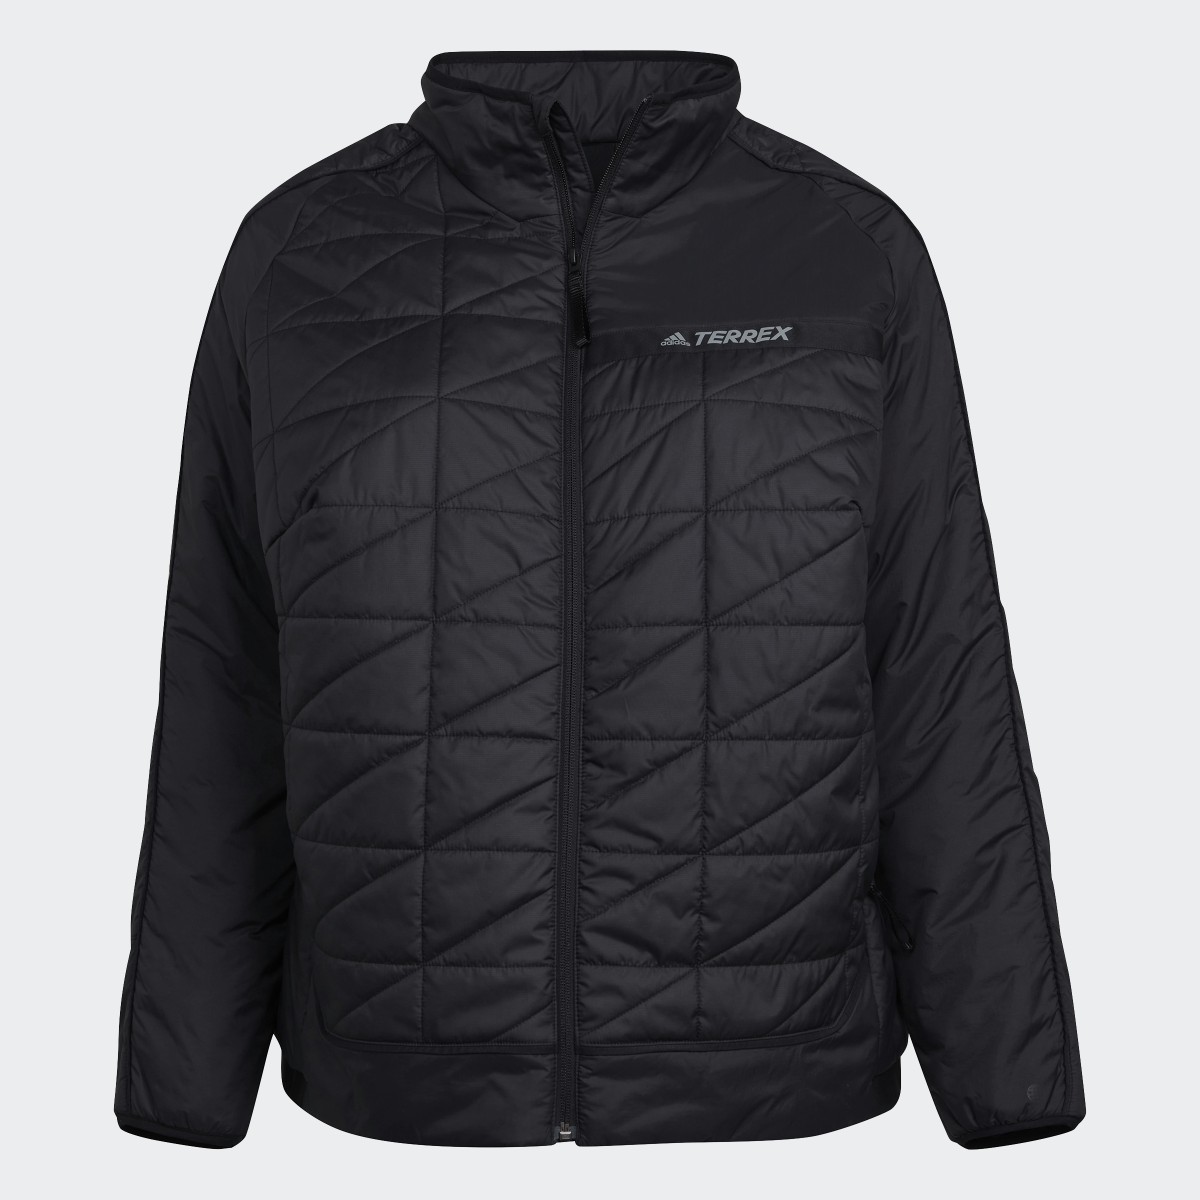 Adidas TERREX Multi Insulated Jacke – Große Größen. 6